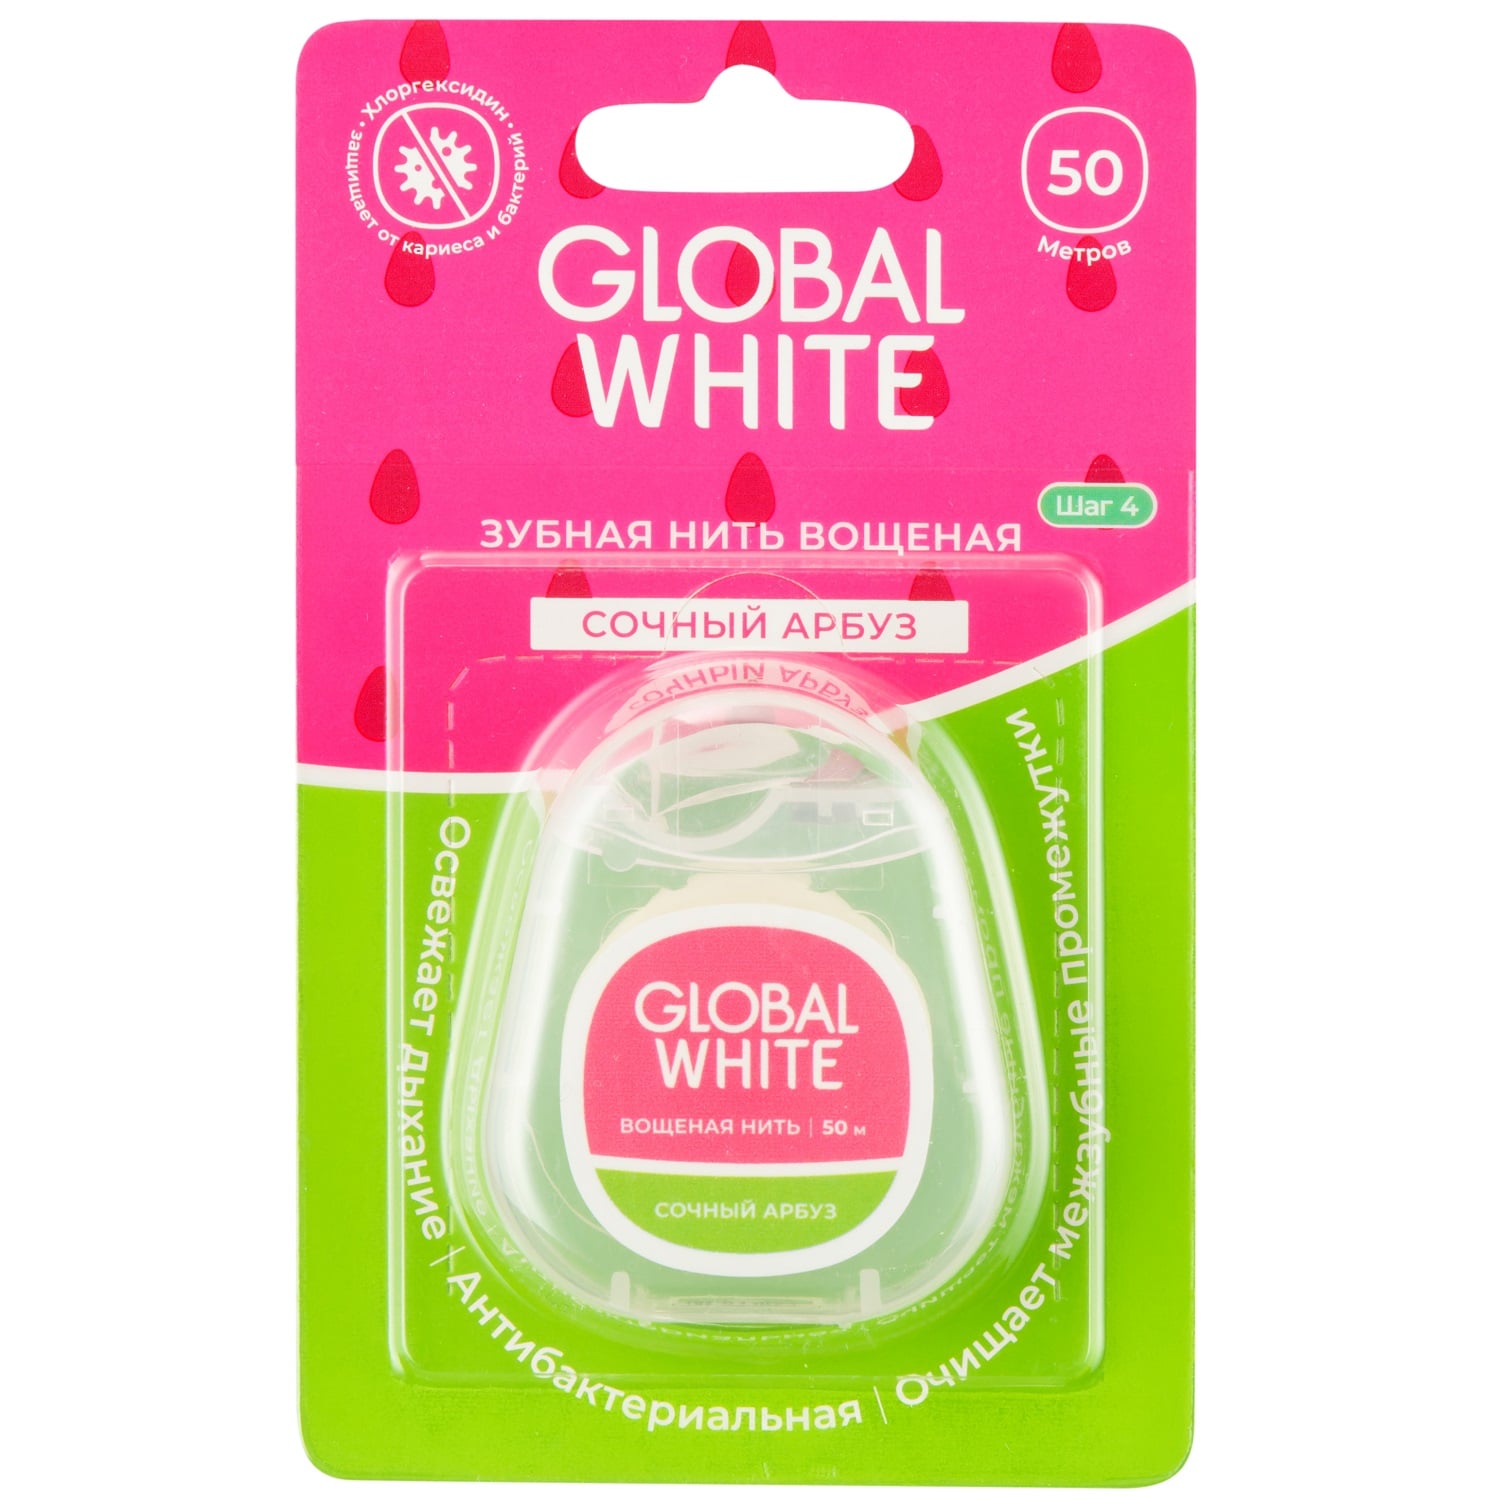 Global White Вощеная зубная нить Сочный арбуз с хлоргексидином, 50 м (Global White, Поддержание эффекта отбеливания)